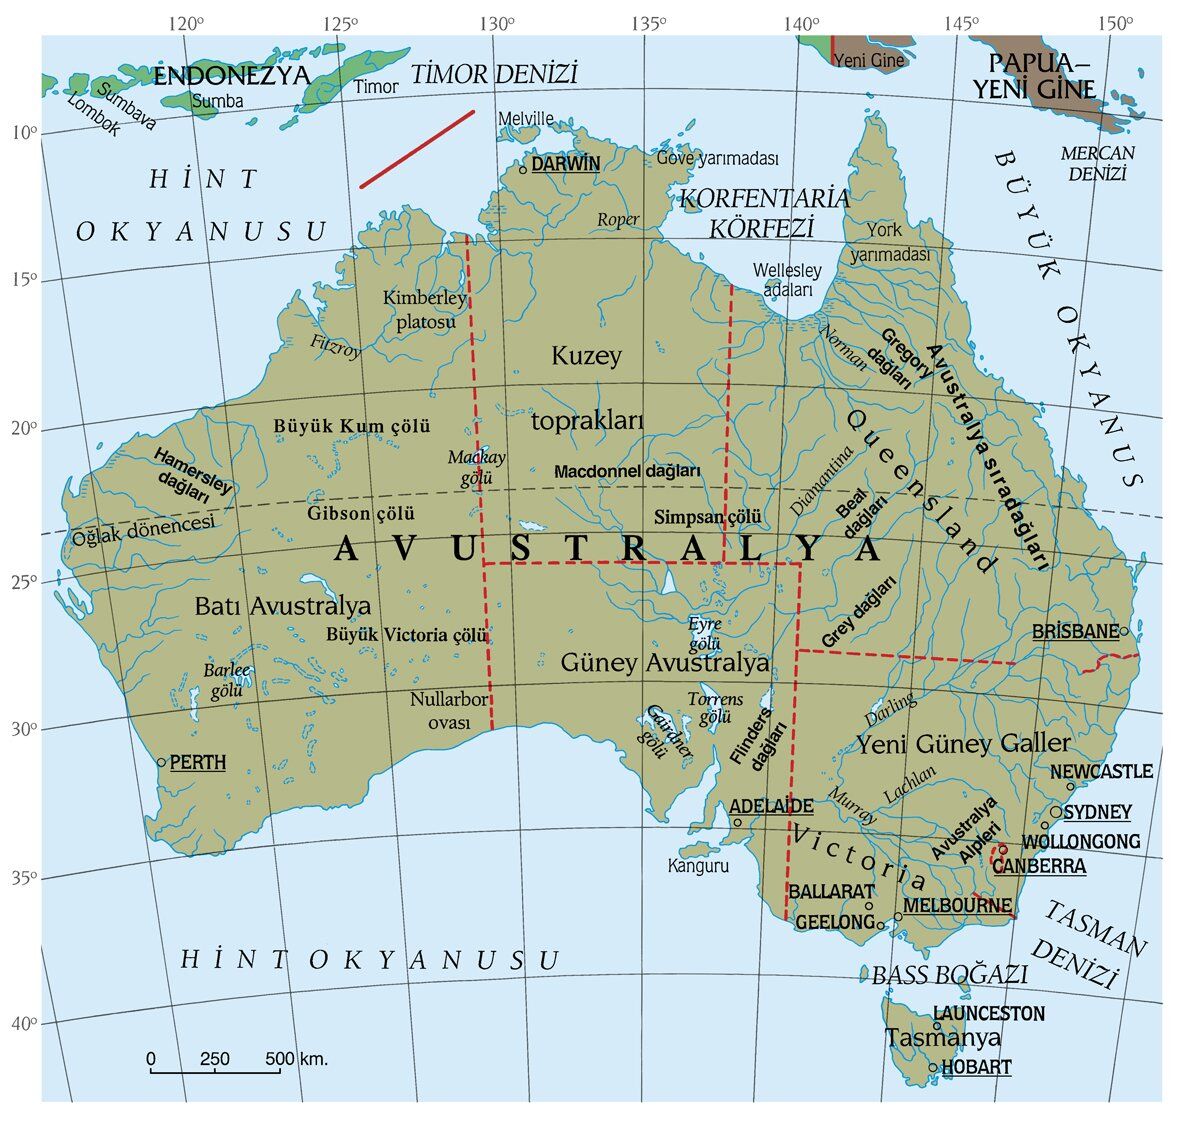 Avustralya'nın Tarihçesi ve Fiziki Yapısı